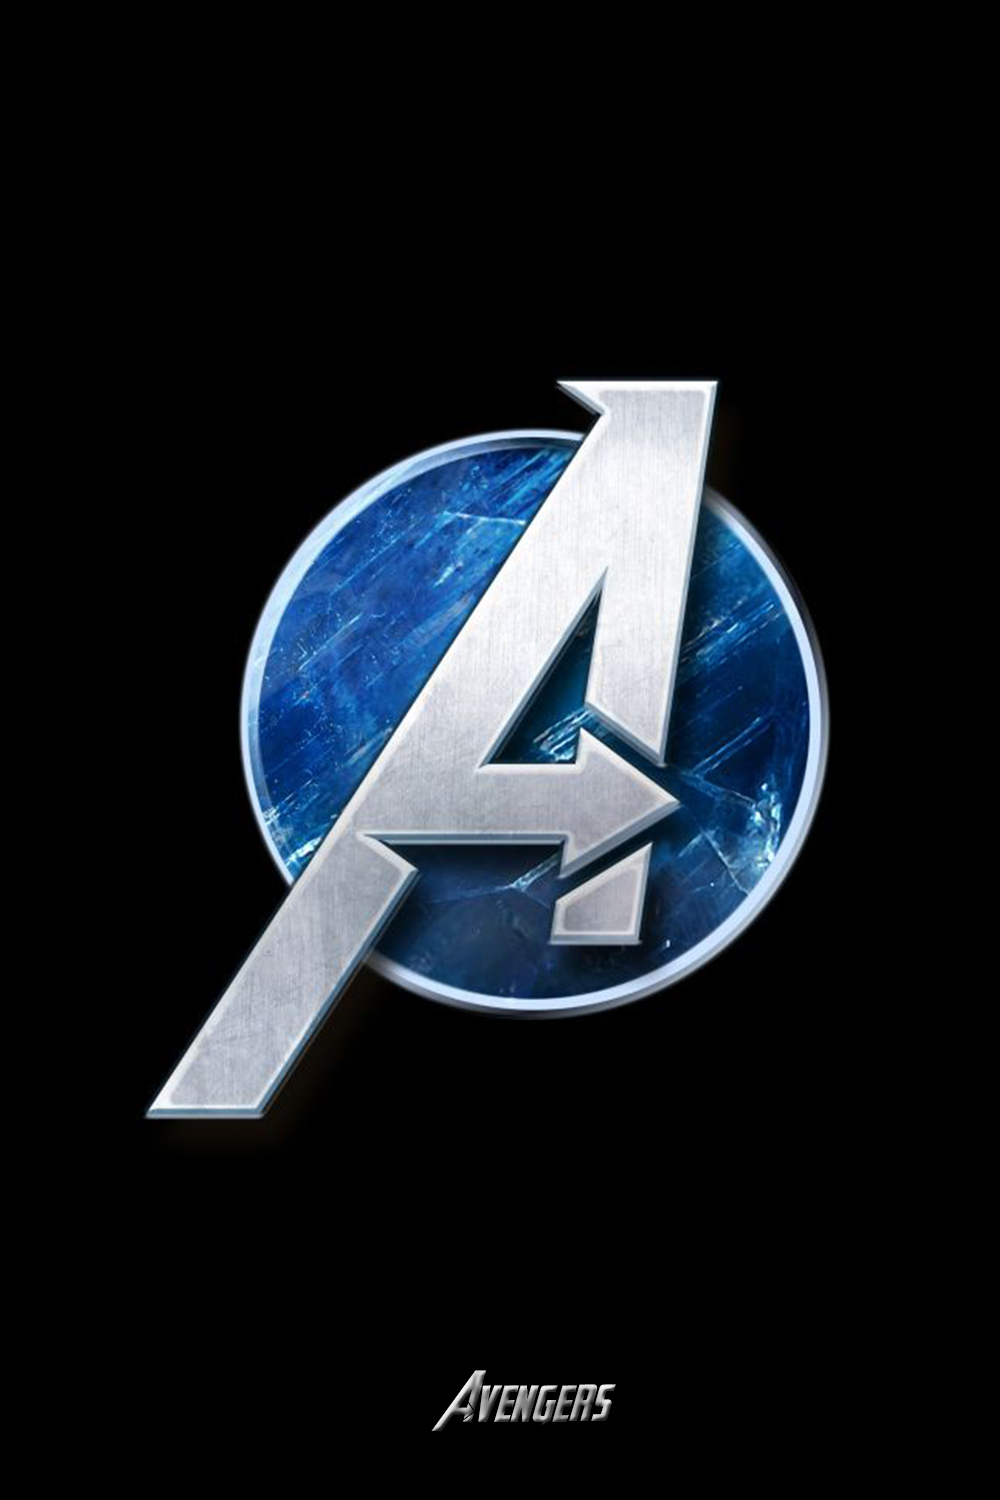 Avengers Logo 4K Wallpaper Free Avengers Logo 4K Background